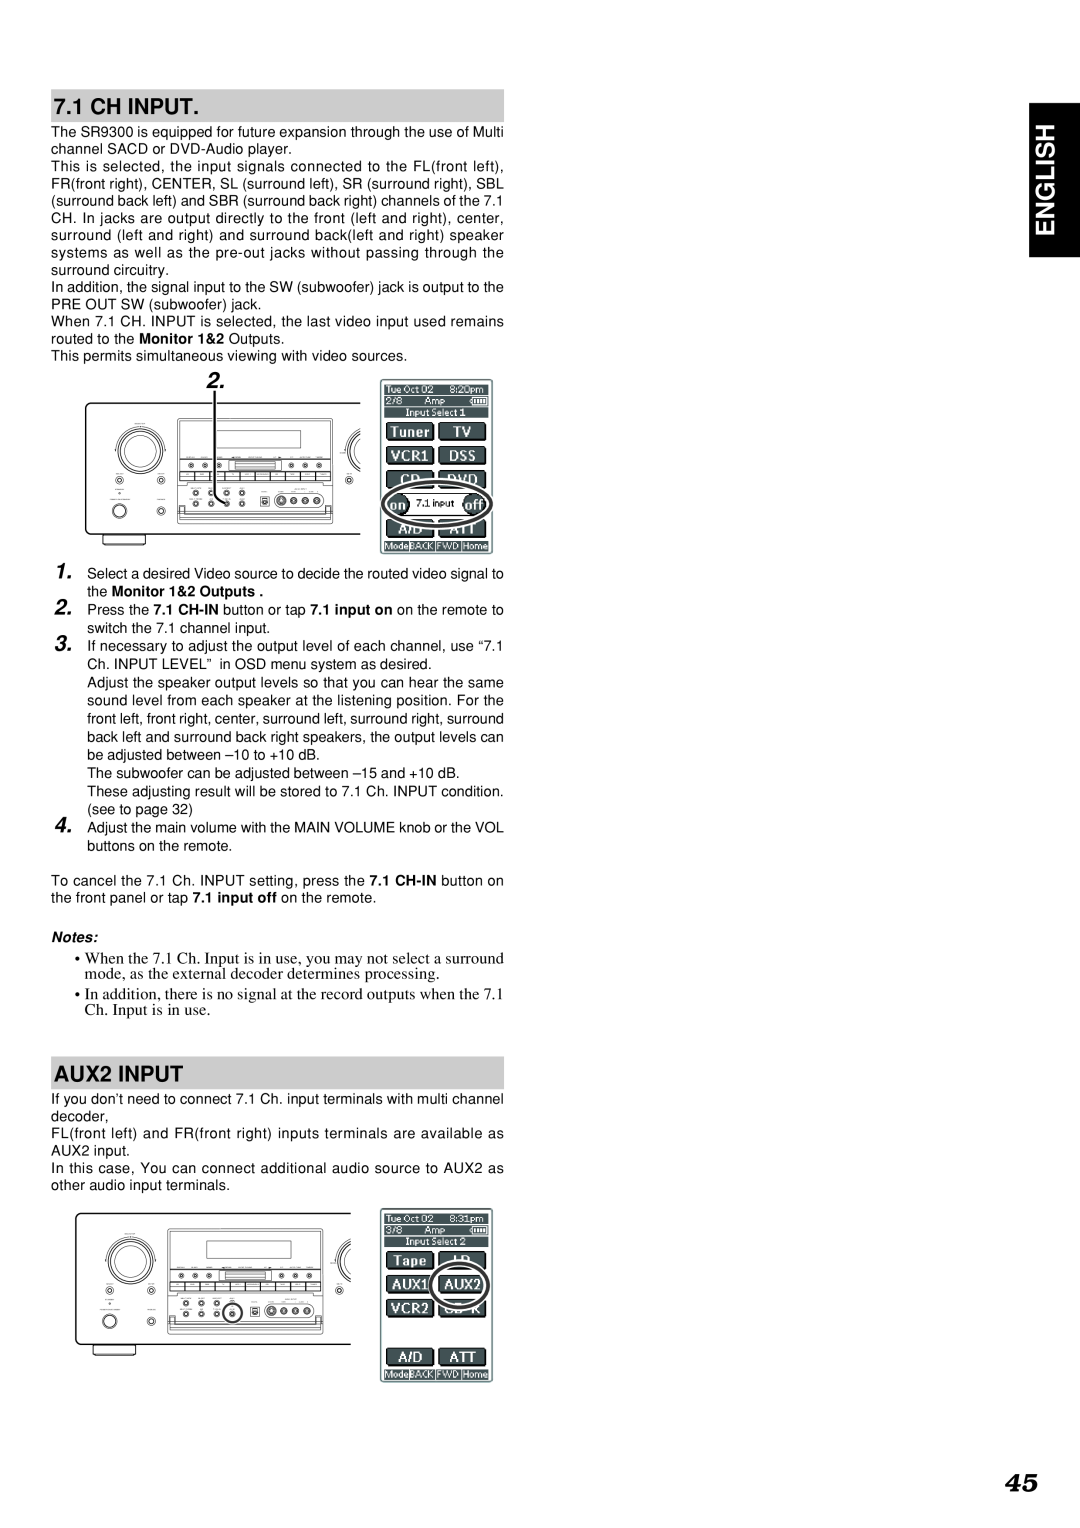 Marantz SR9300 manual English, Ch Input, AUX2 INPUT 